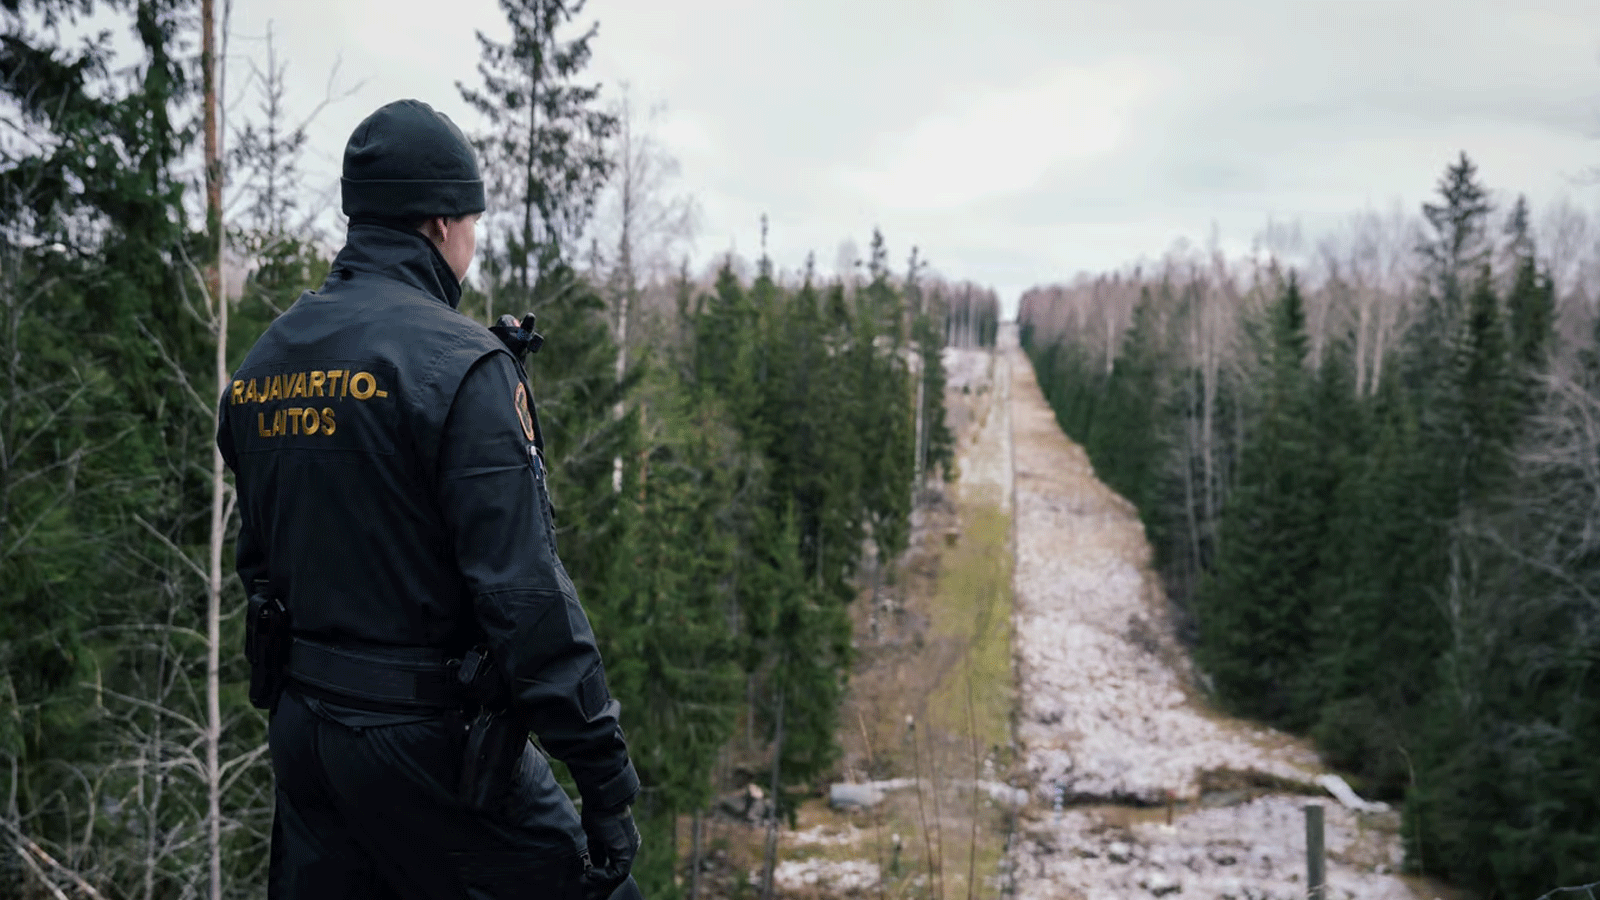 أحد حرس الحدود ينظر إلى الحد الفاصل بين فنلندا وروسيا، في إيماترا